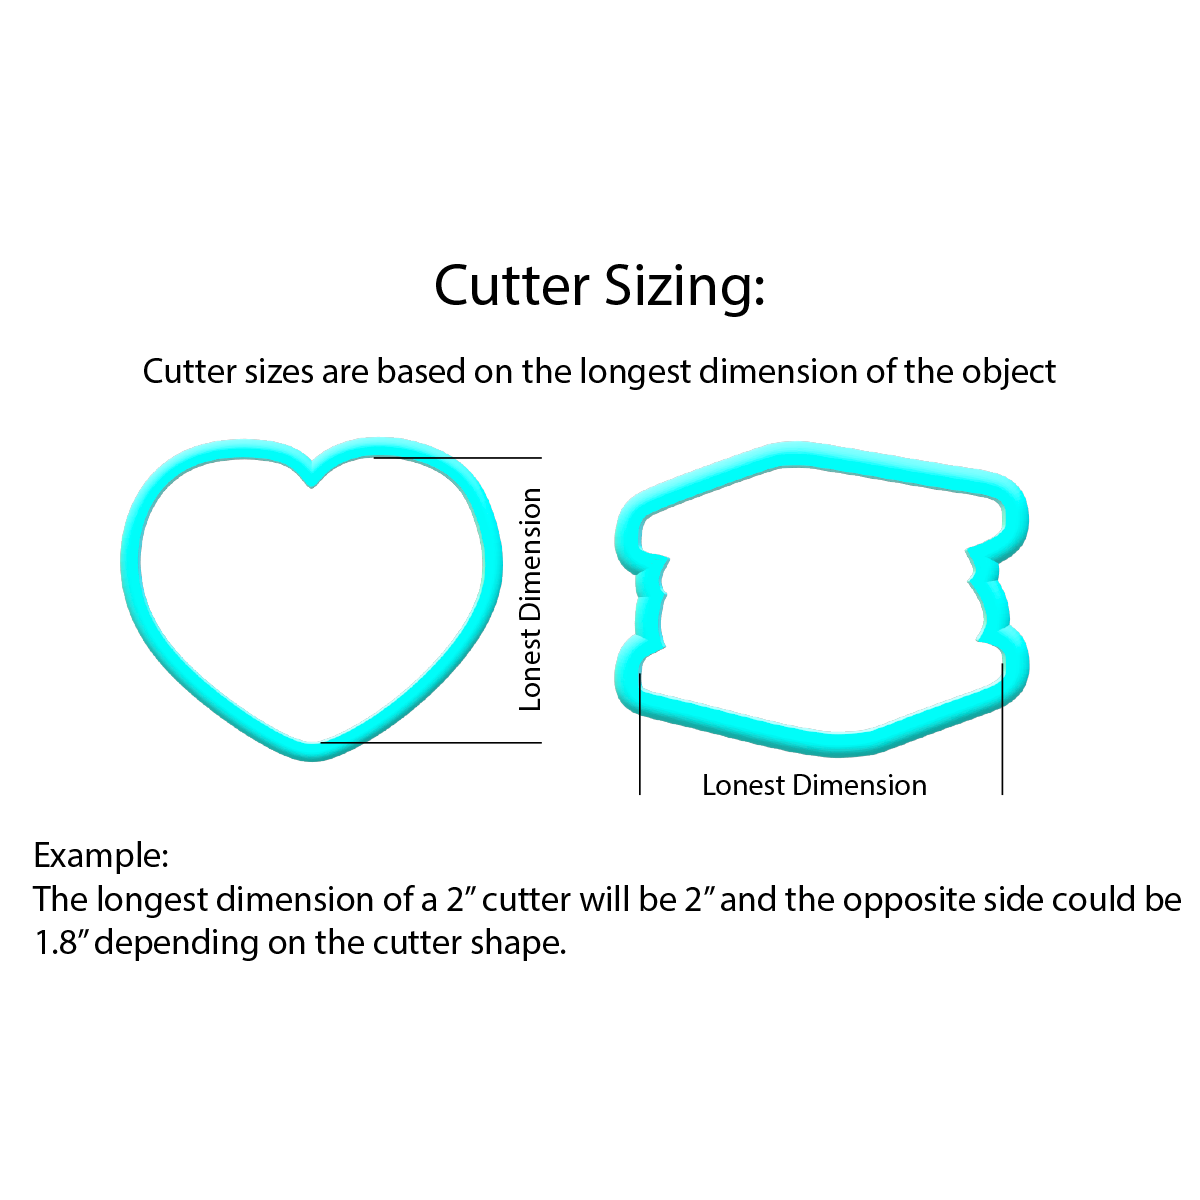 Clover Emoji Cookie Cutters | STL Files